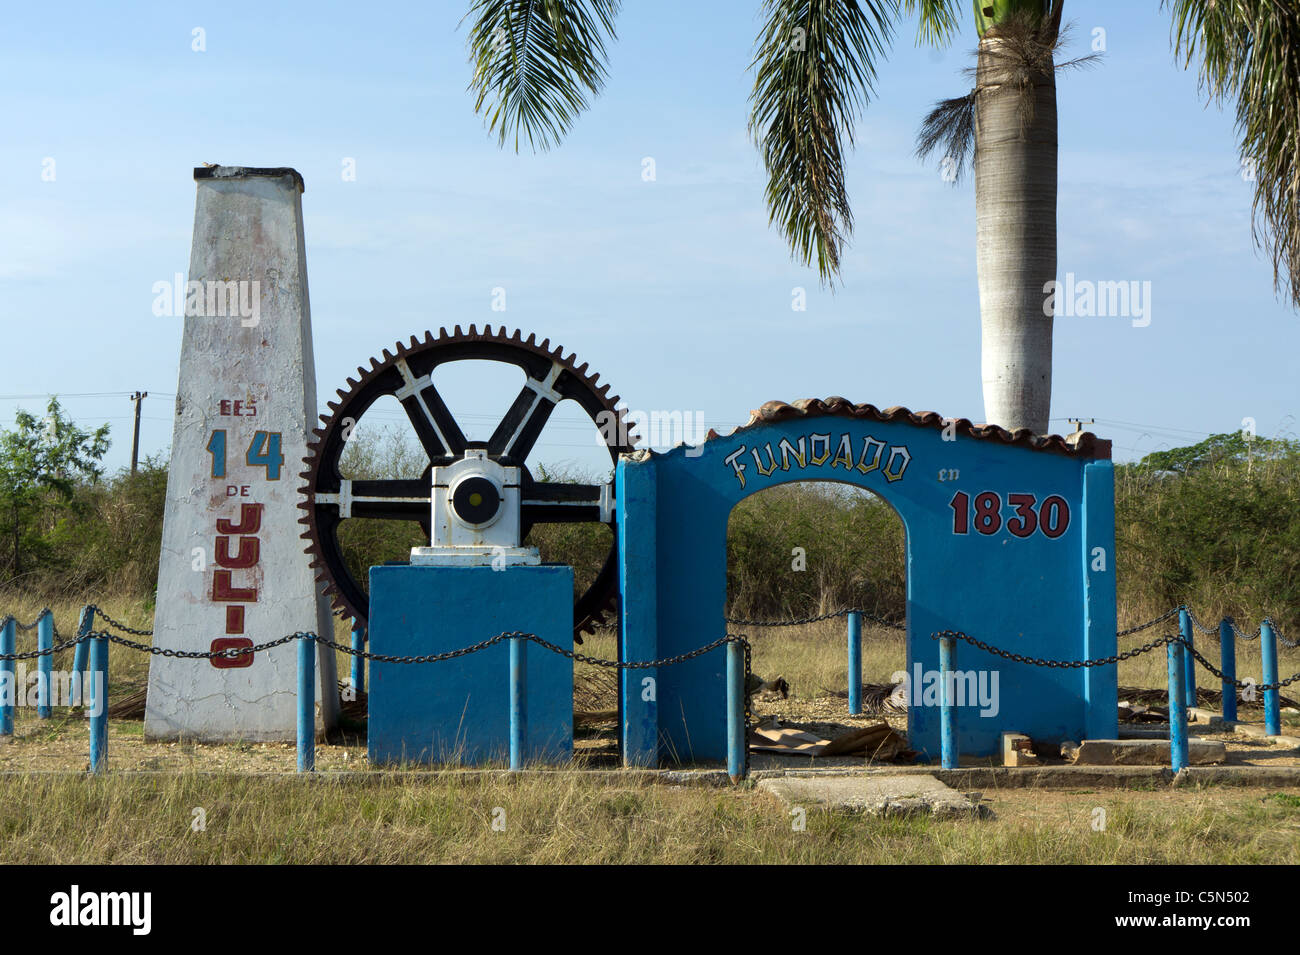 Monumento a una fábrica fundada el 14 de julio de 1830. En la carretera de Cienfuegos a Abreus, Cuba. Foto de stock